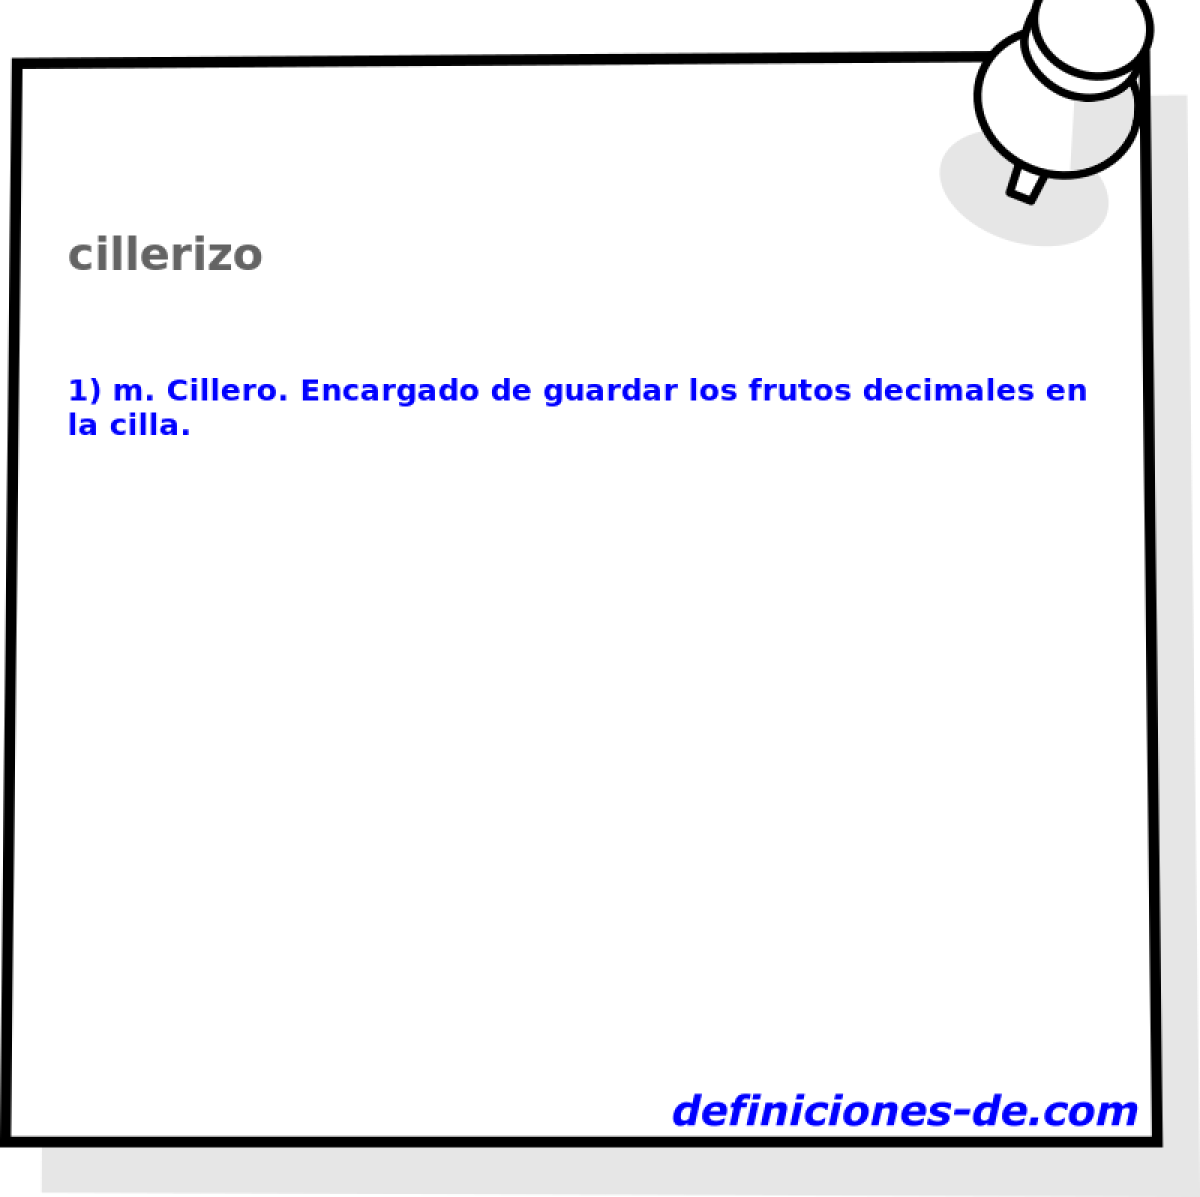 cillerizo 